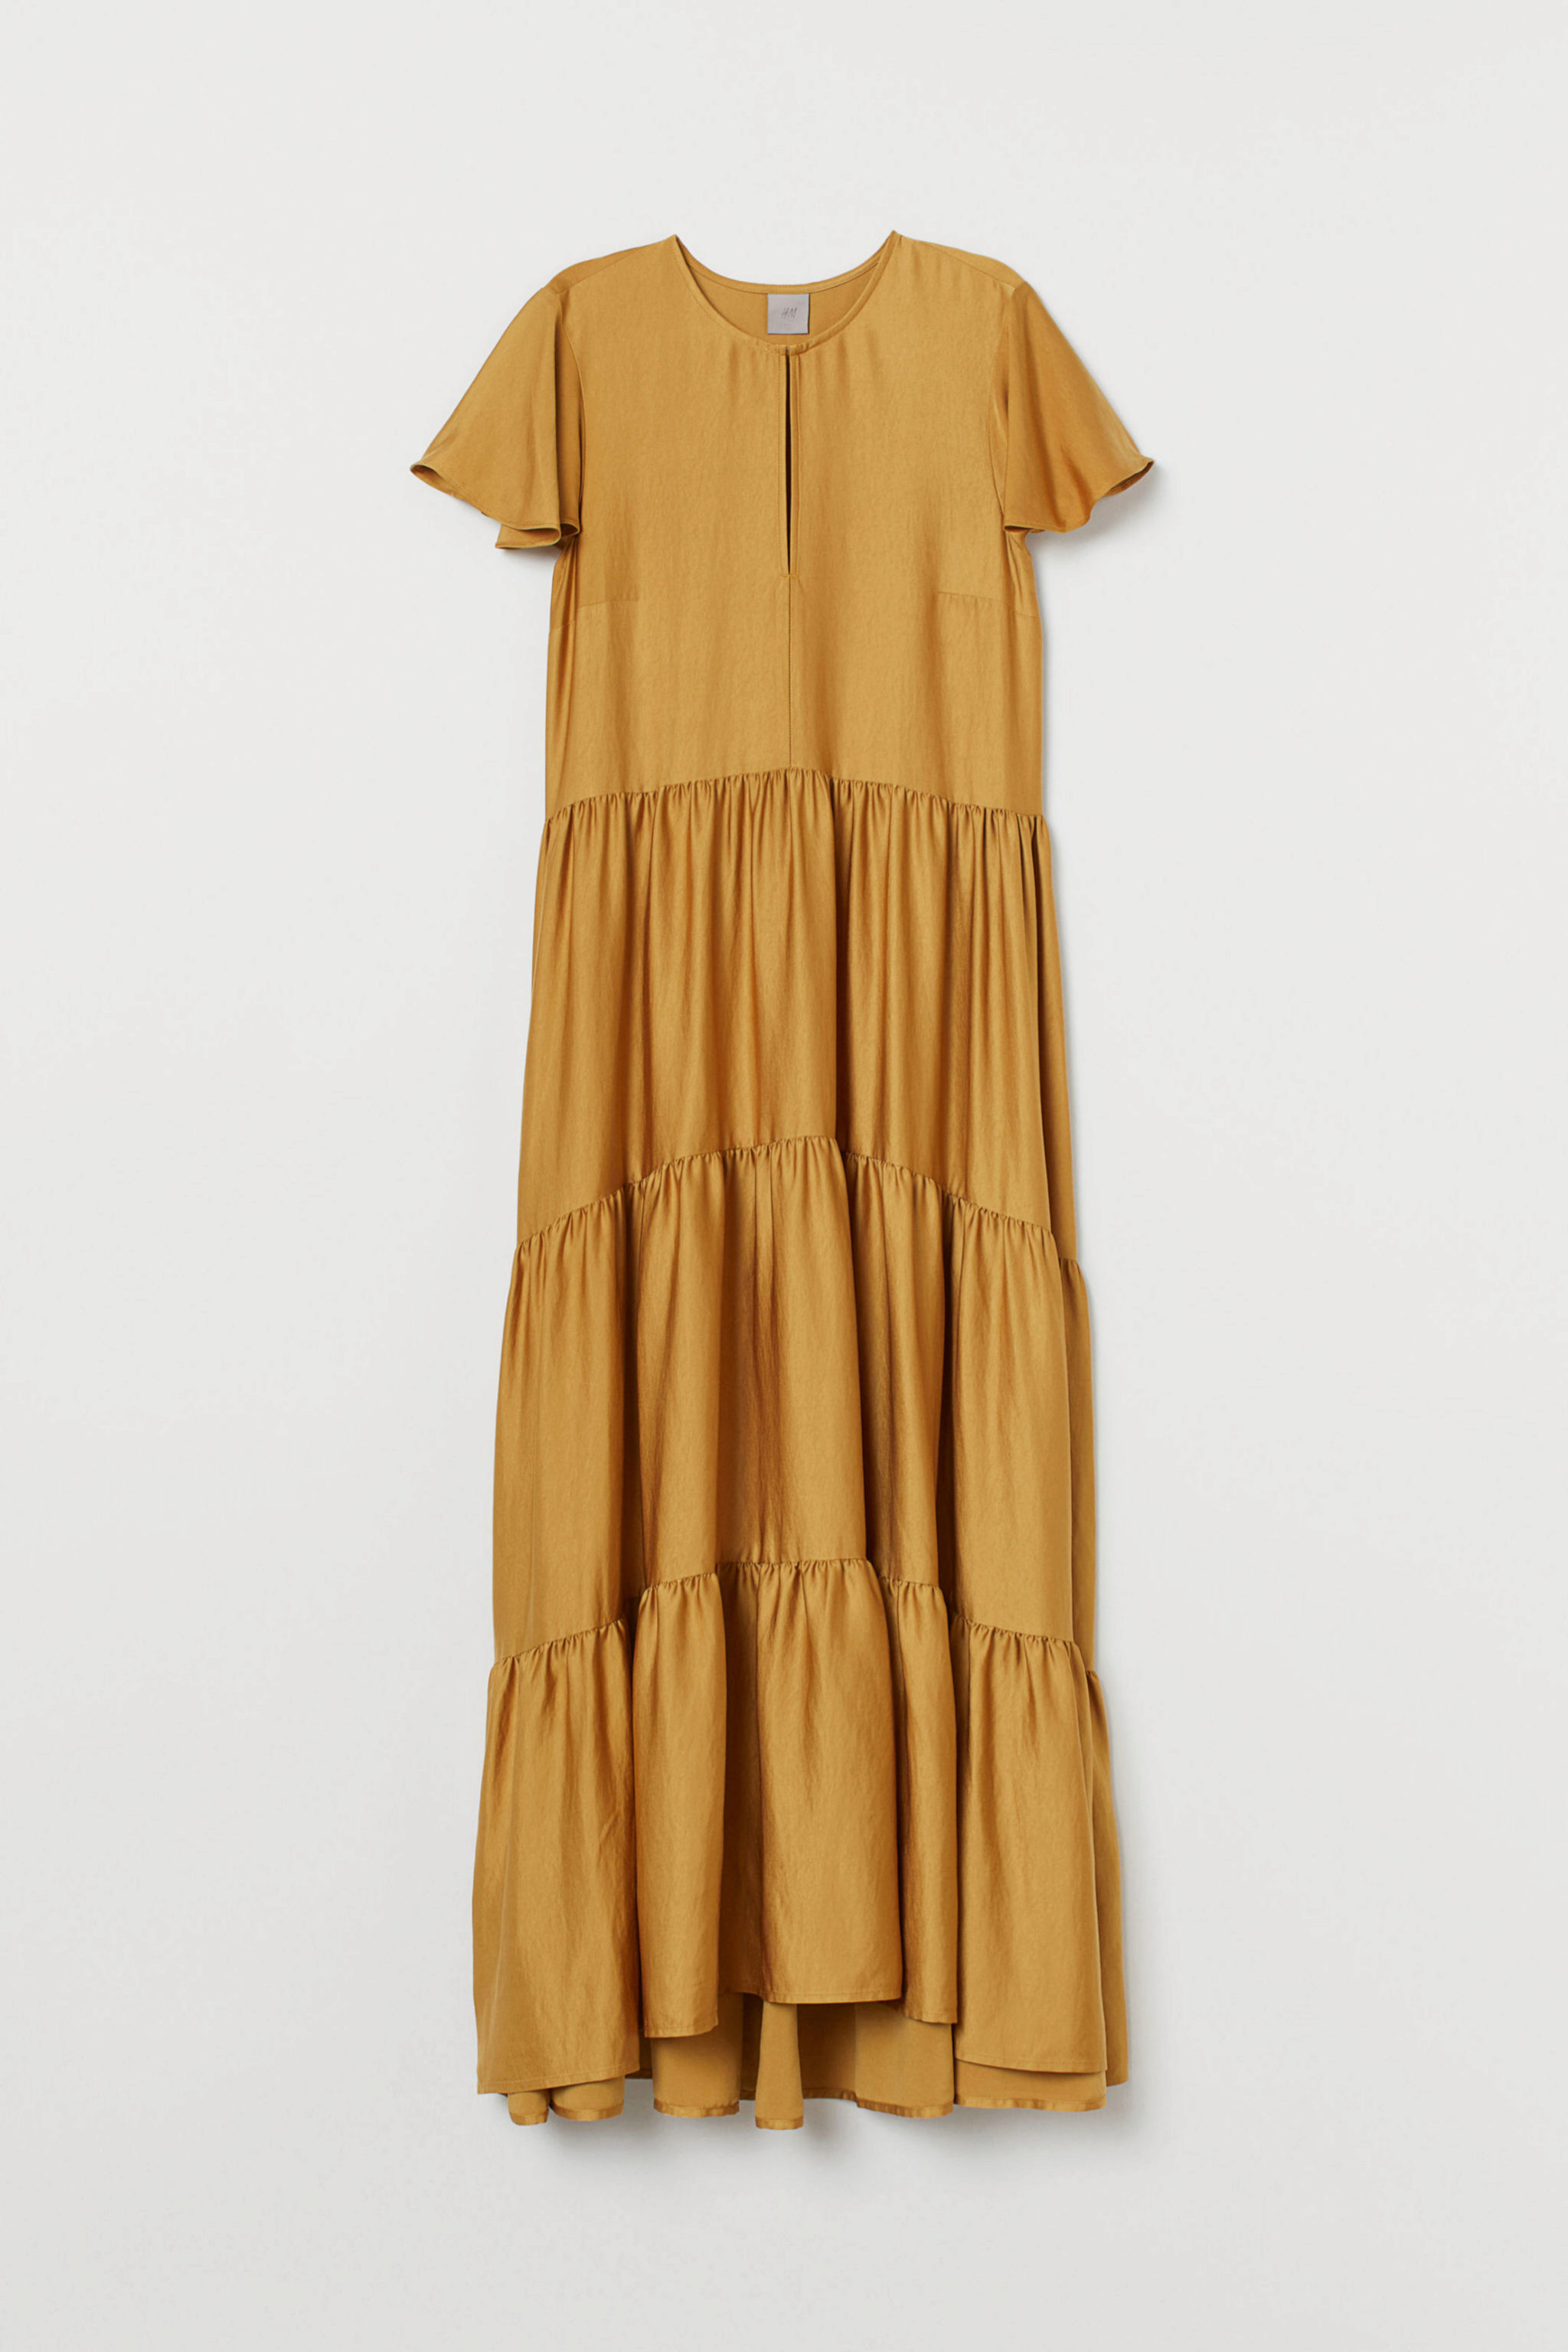 Vestido satinado en color mostaza de H&M (69,99¤)